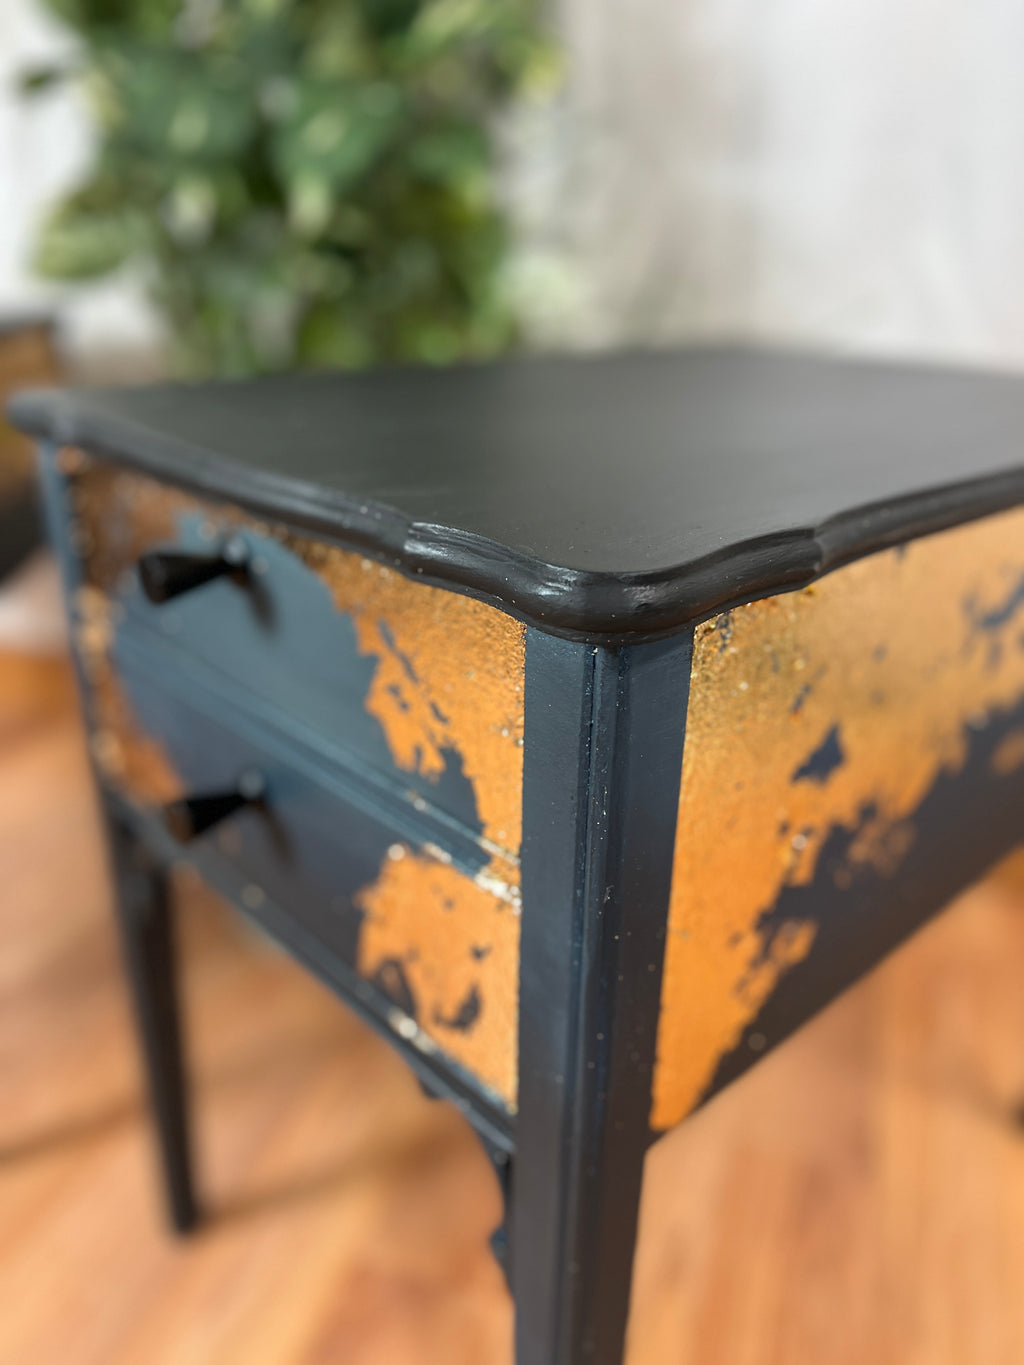 Elegantly Simple- End Table Set - Side Tables - JJ Bean Designs